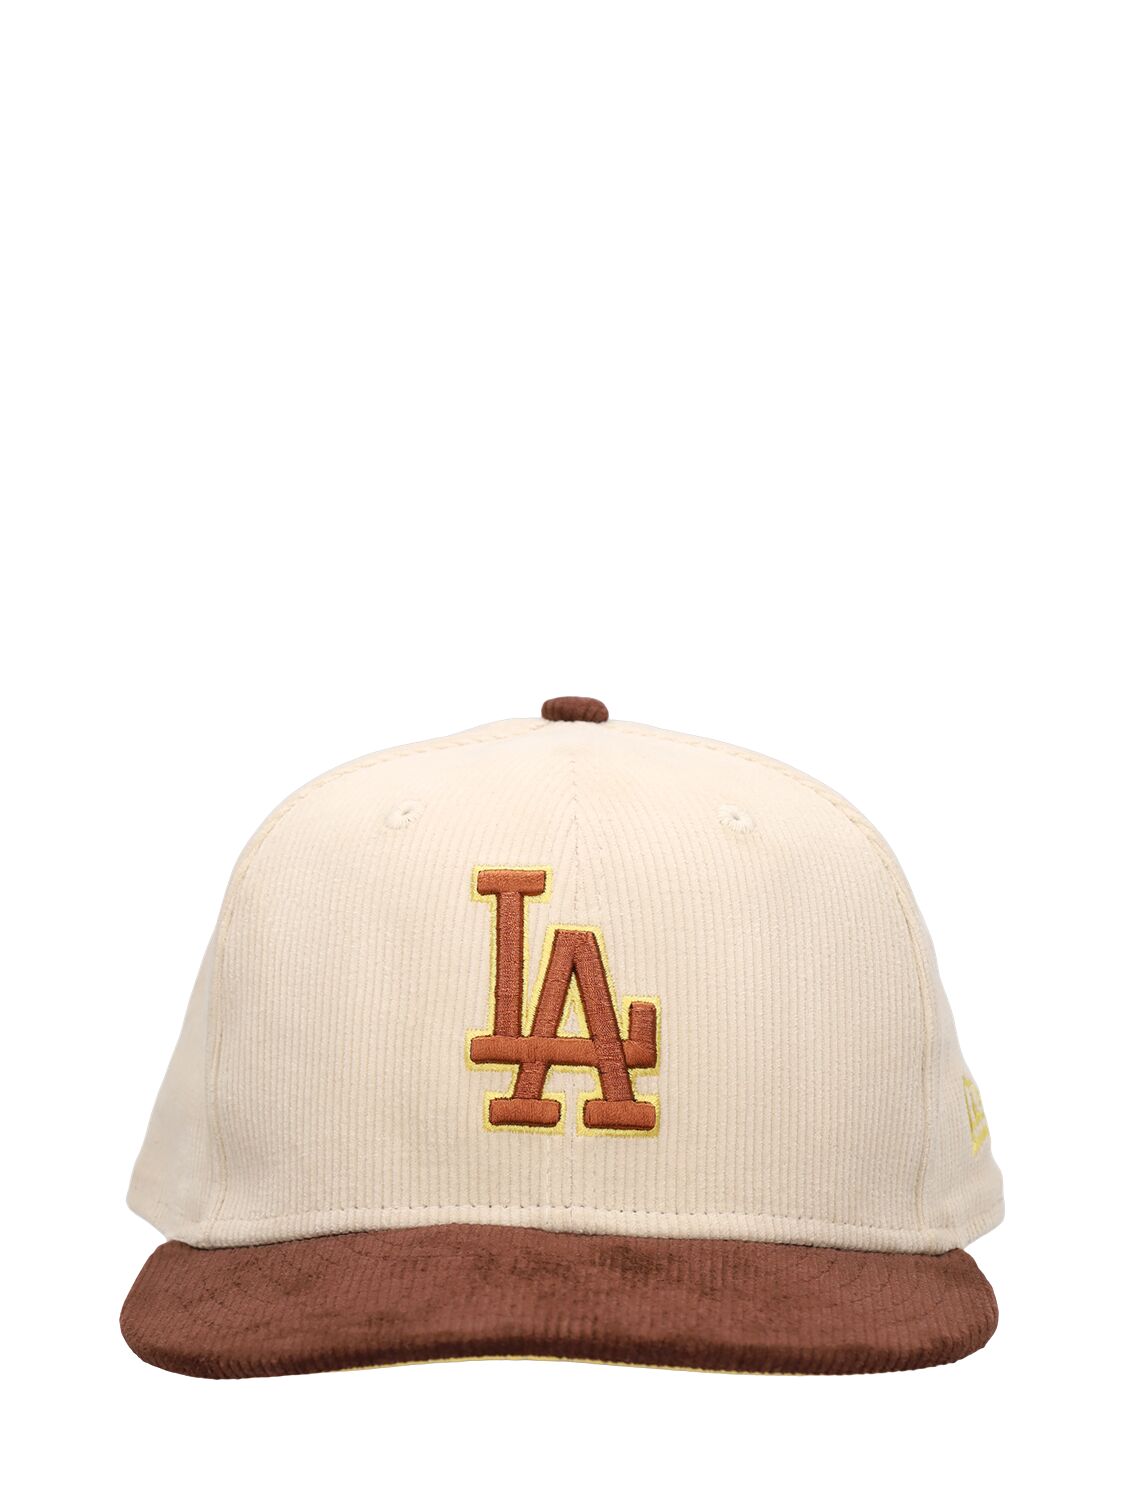 Image of La Dodgers 59fifty Cap